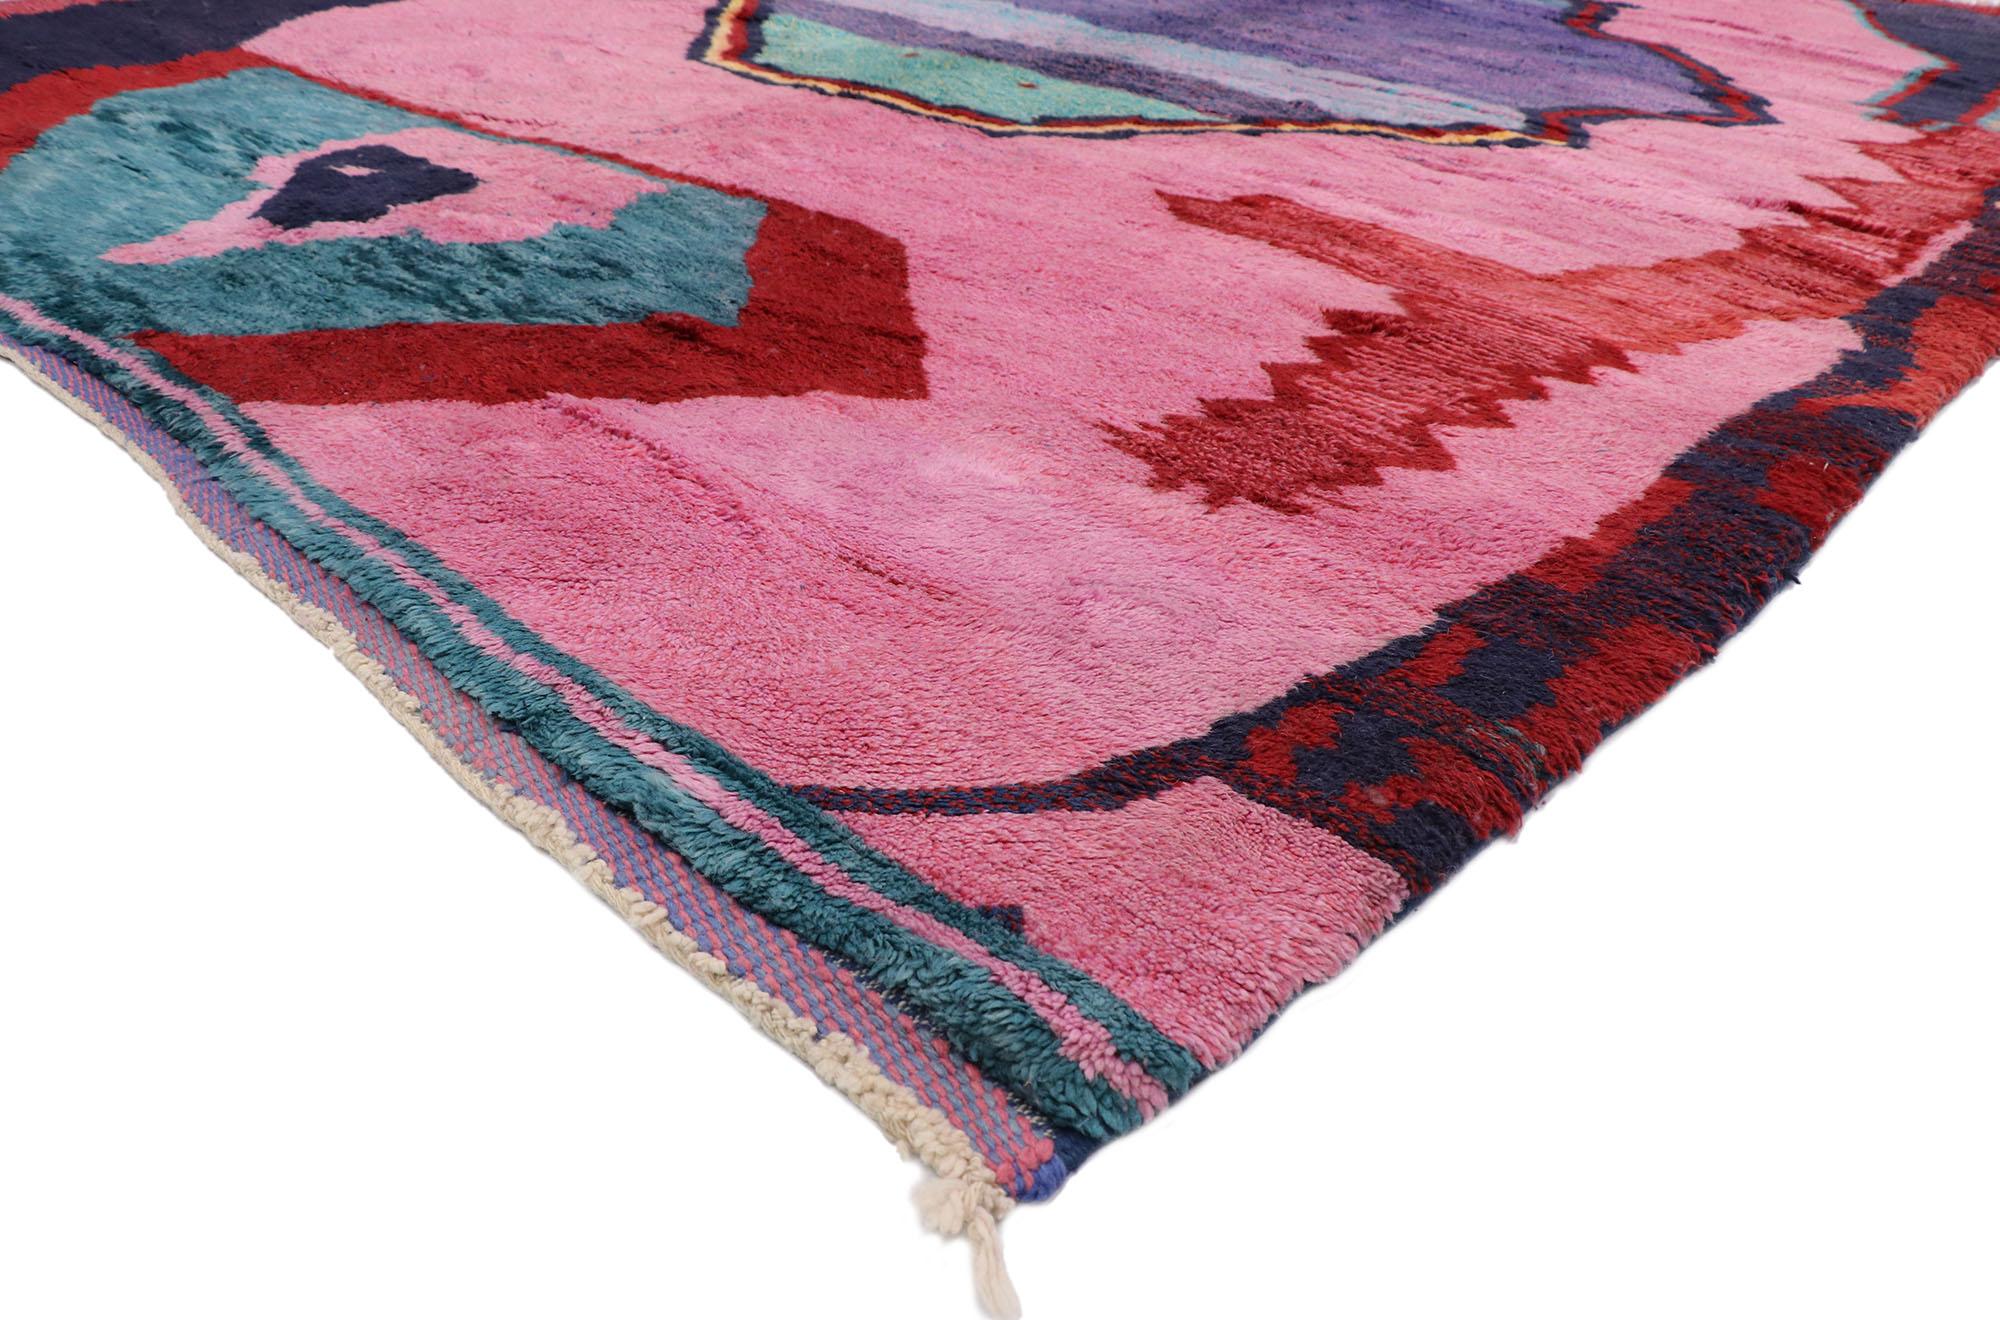 21102 Neuer zeitgenössischer marokkanischer Berberteppich inspiriert von Ad Reinhardt 10'01 x 13'05. Dieser moderne marokkanische Berberteppich aus handgeknüpfter Wolle besticht durch sein kühnes, ausdrucksstarkes Design, seine unglaubliche